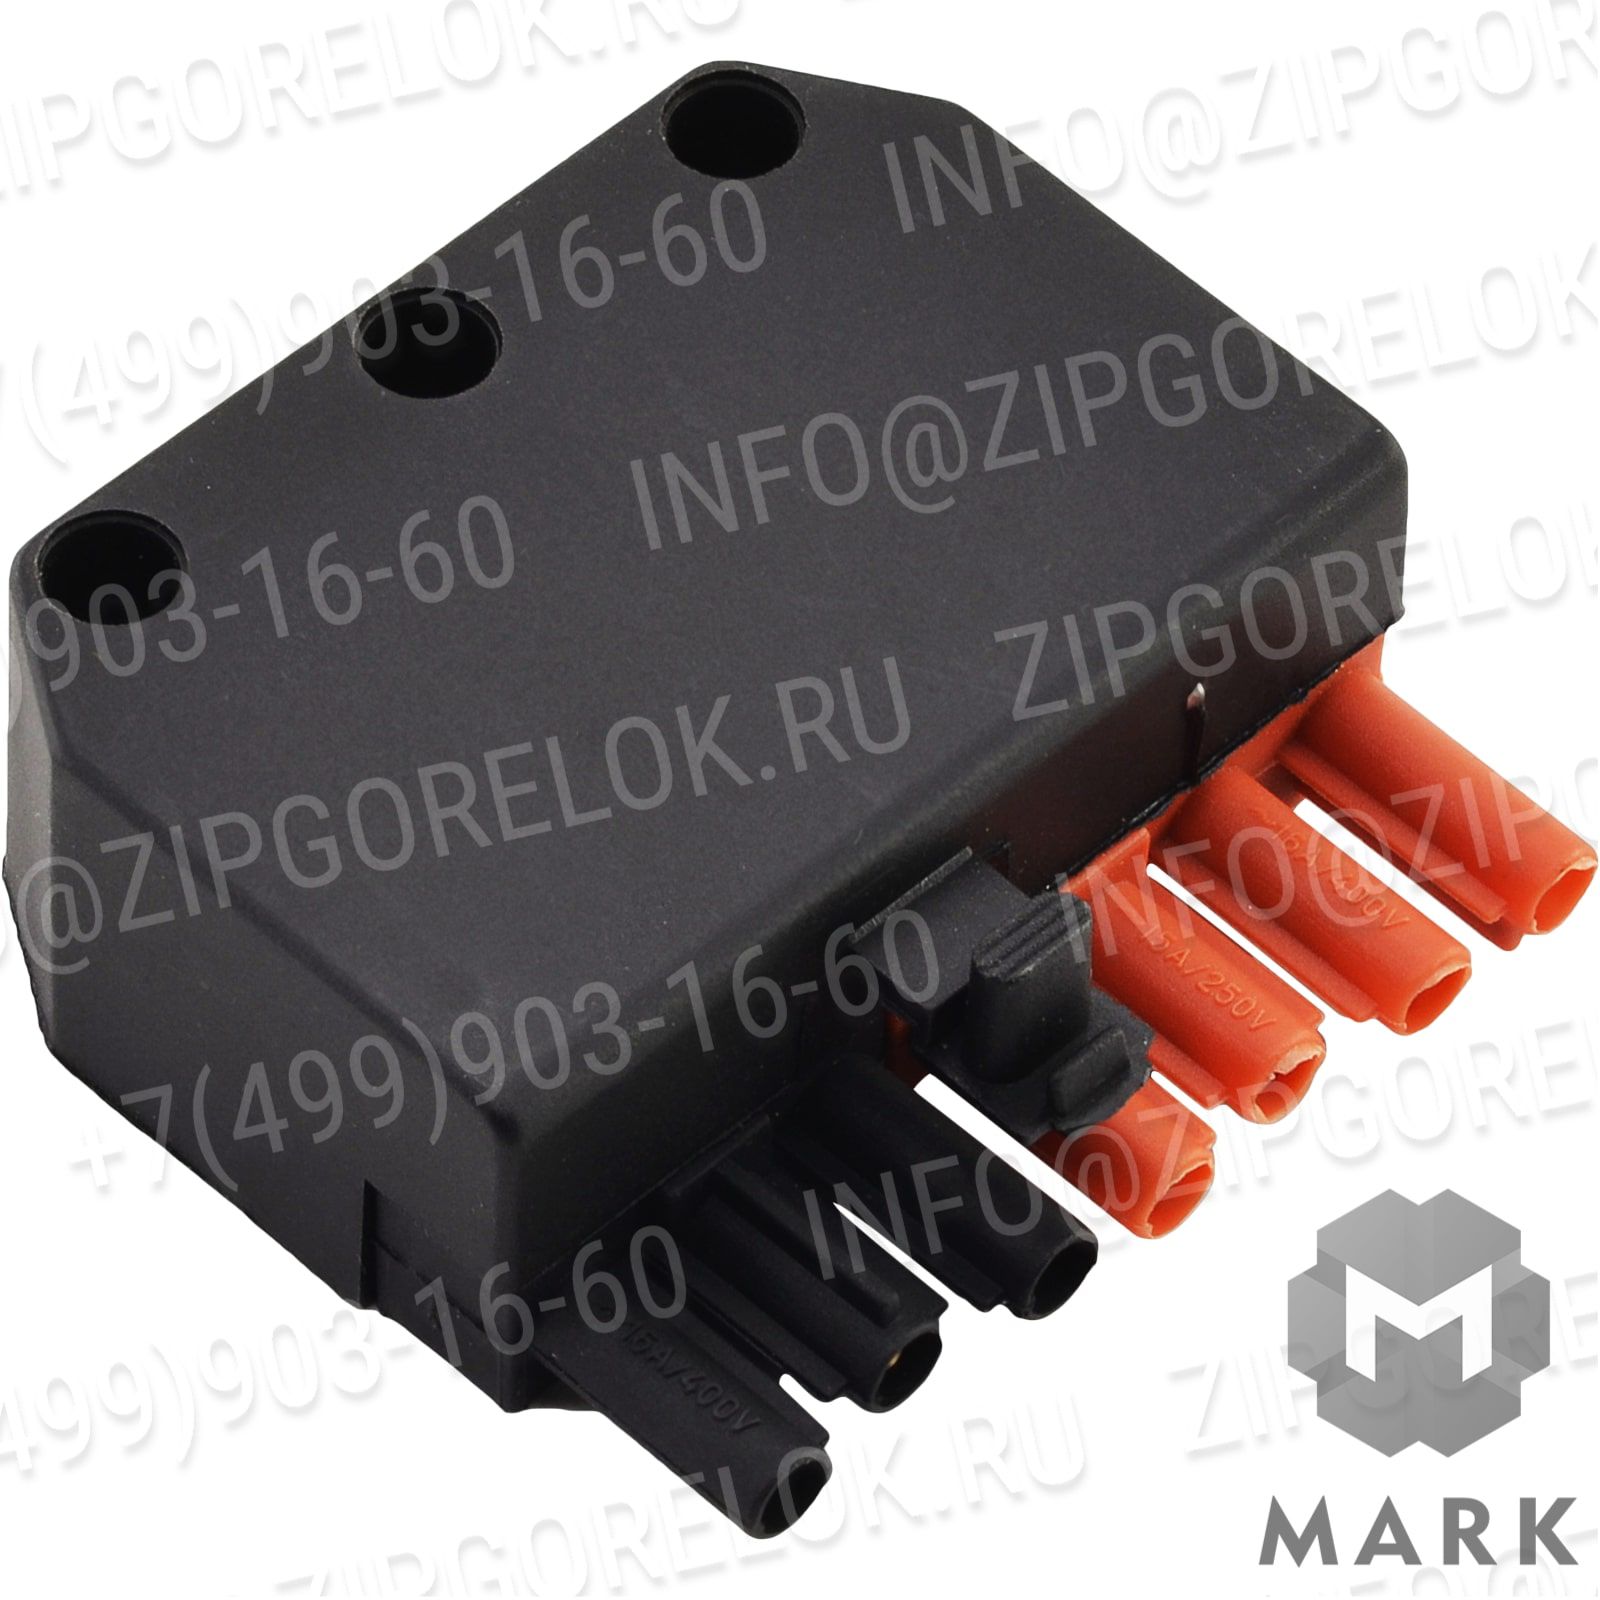 5130053 Купить Конденсатор 8 мкФ в комплекте | Zipgorelok.ru